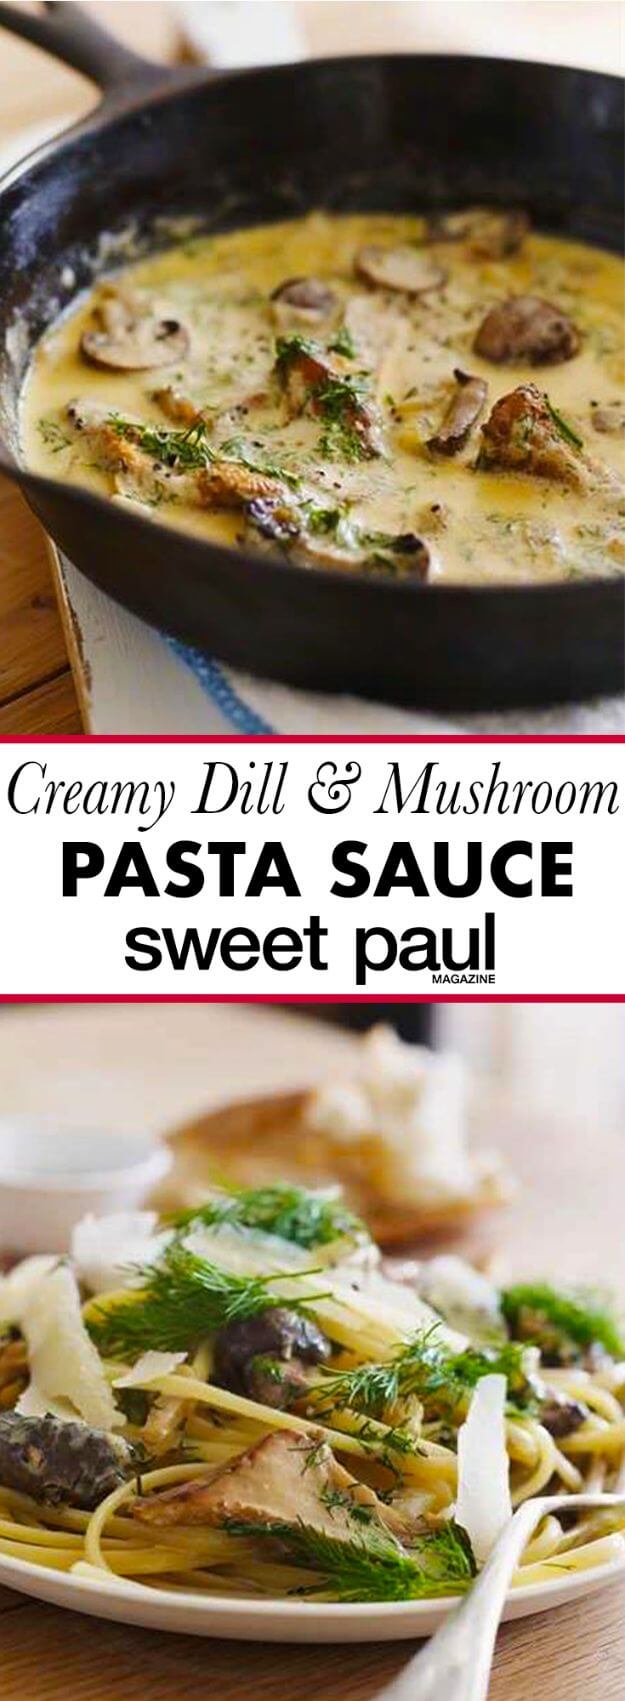 Creamy Mushroom & Dill Pasta